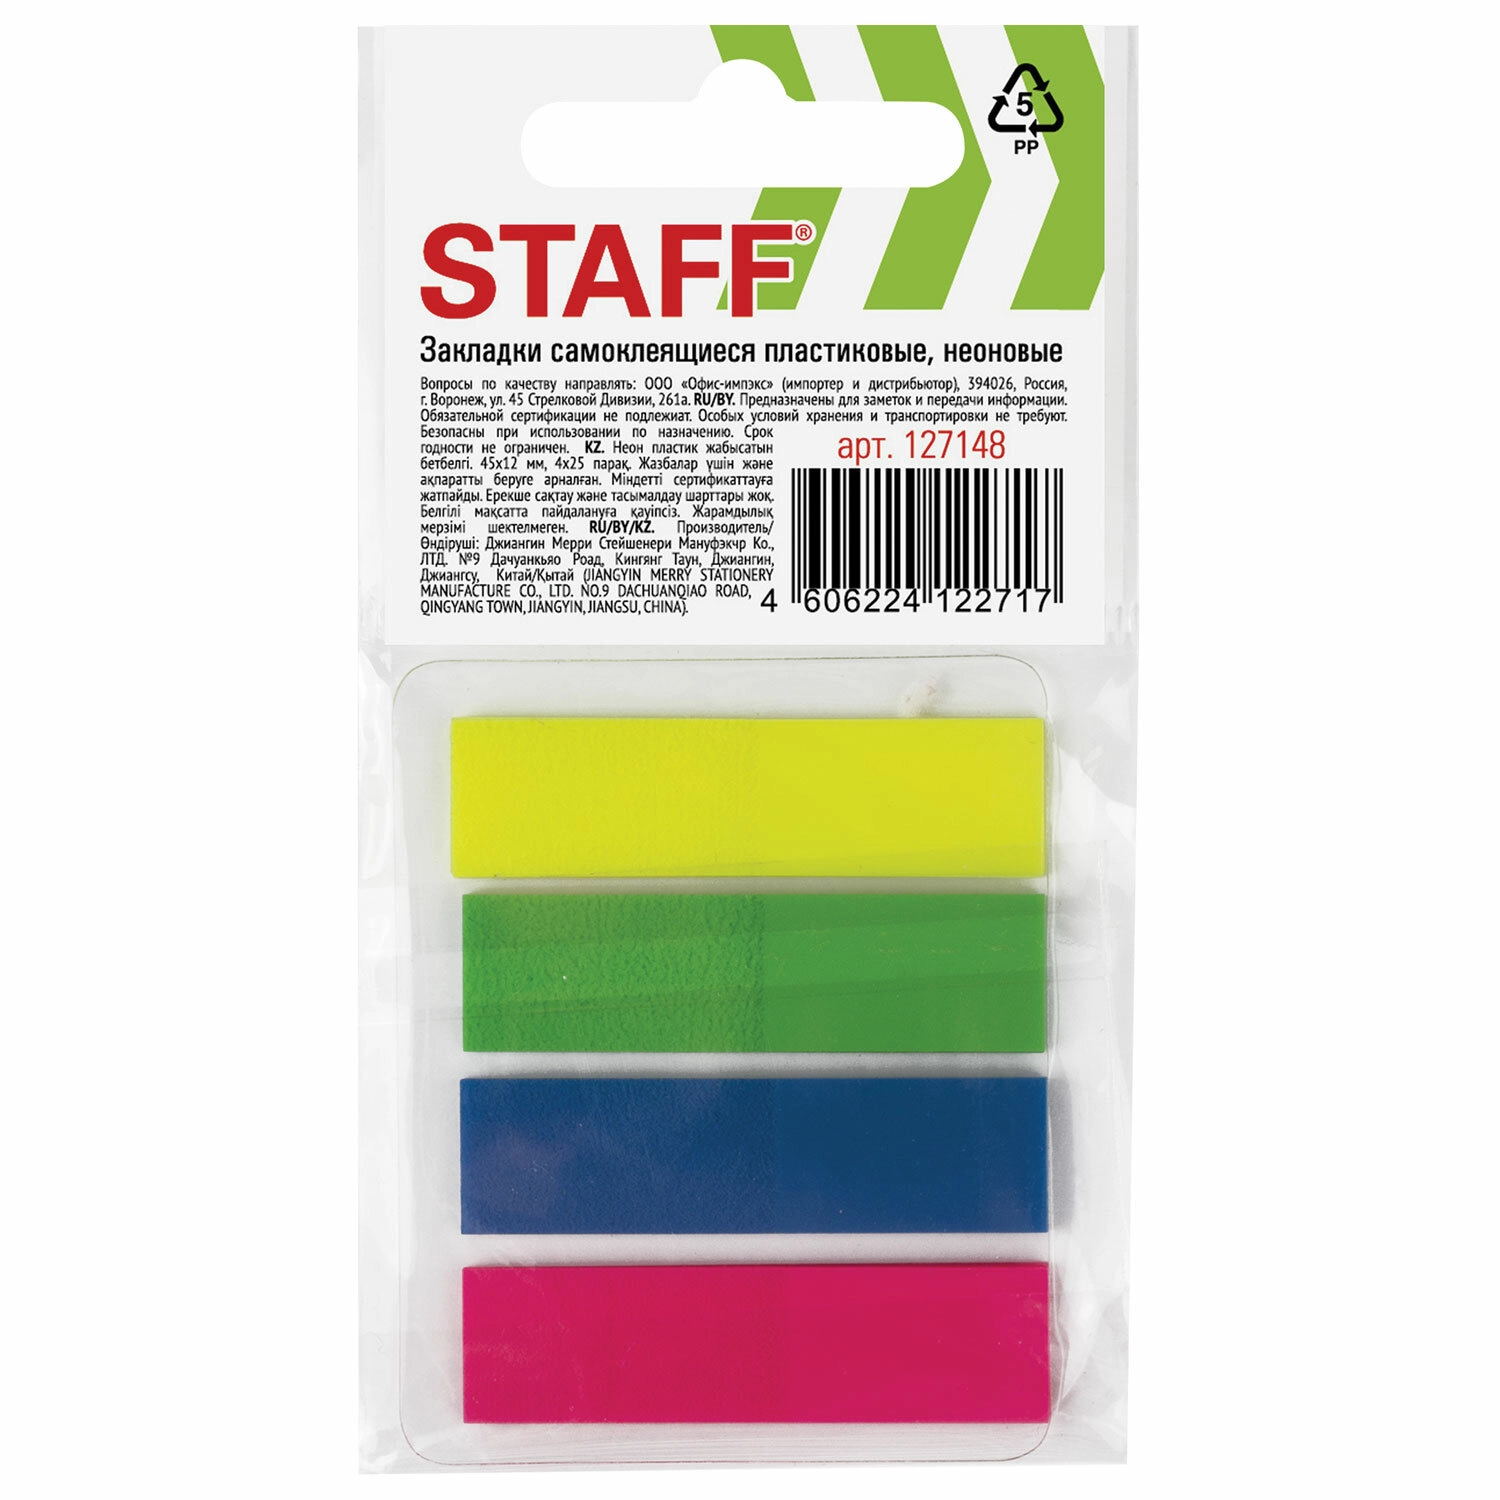 Закладки клейкие STAFF PROFIT неоновые пластиковые 12х45 мм 4 цвета по 25 л